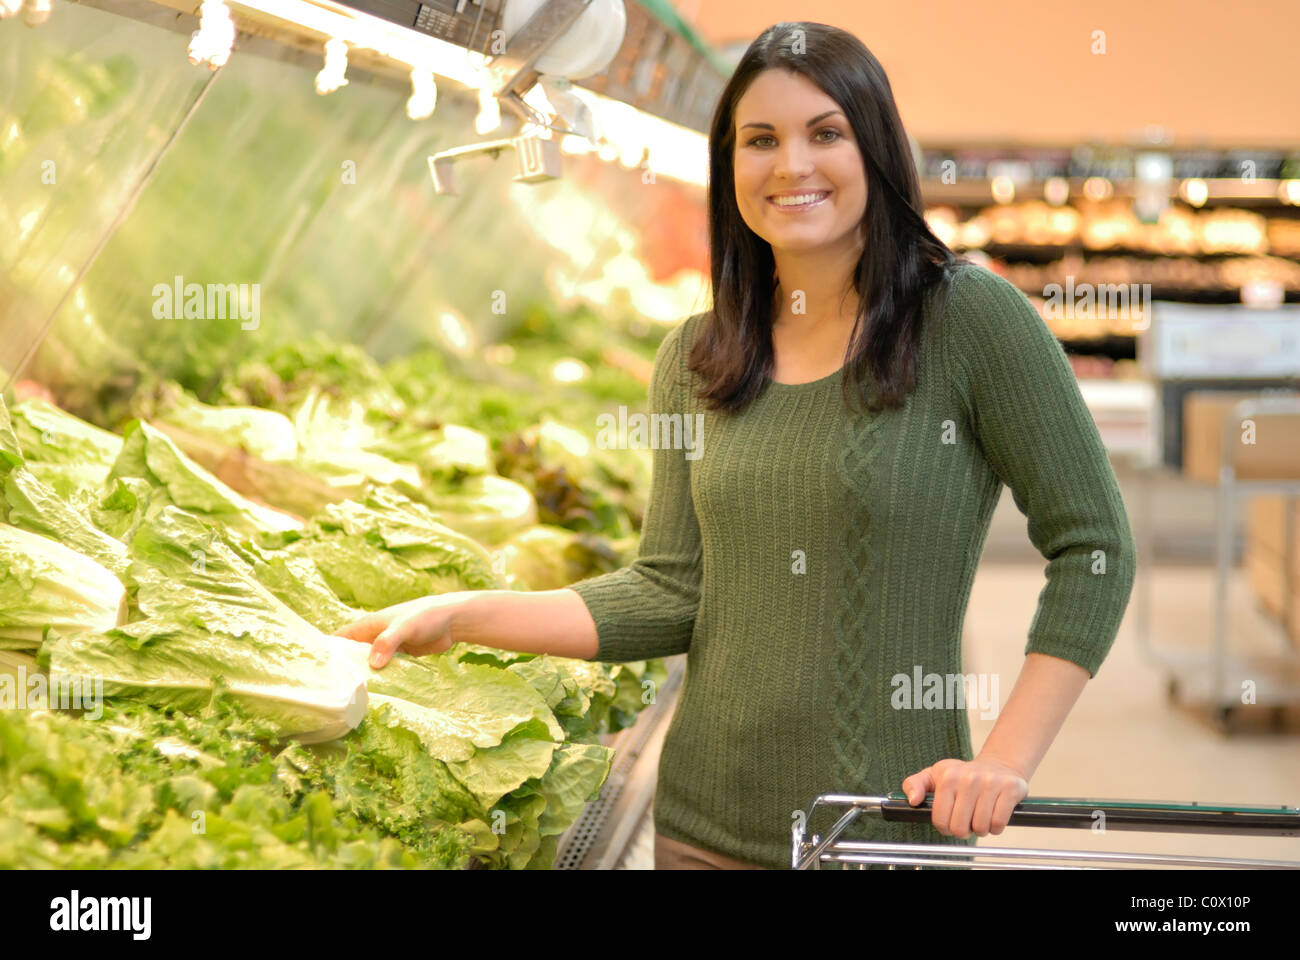 Fotografia Stock di donna attraente shopping per produrre o negozi di generi alimentari Foto Stock